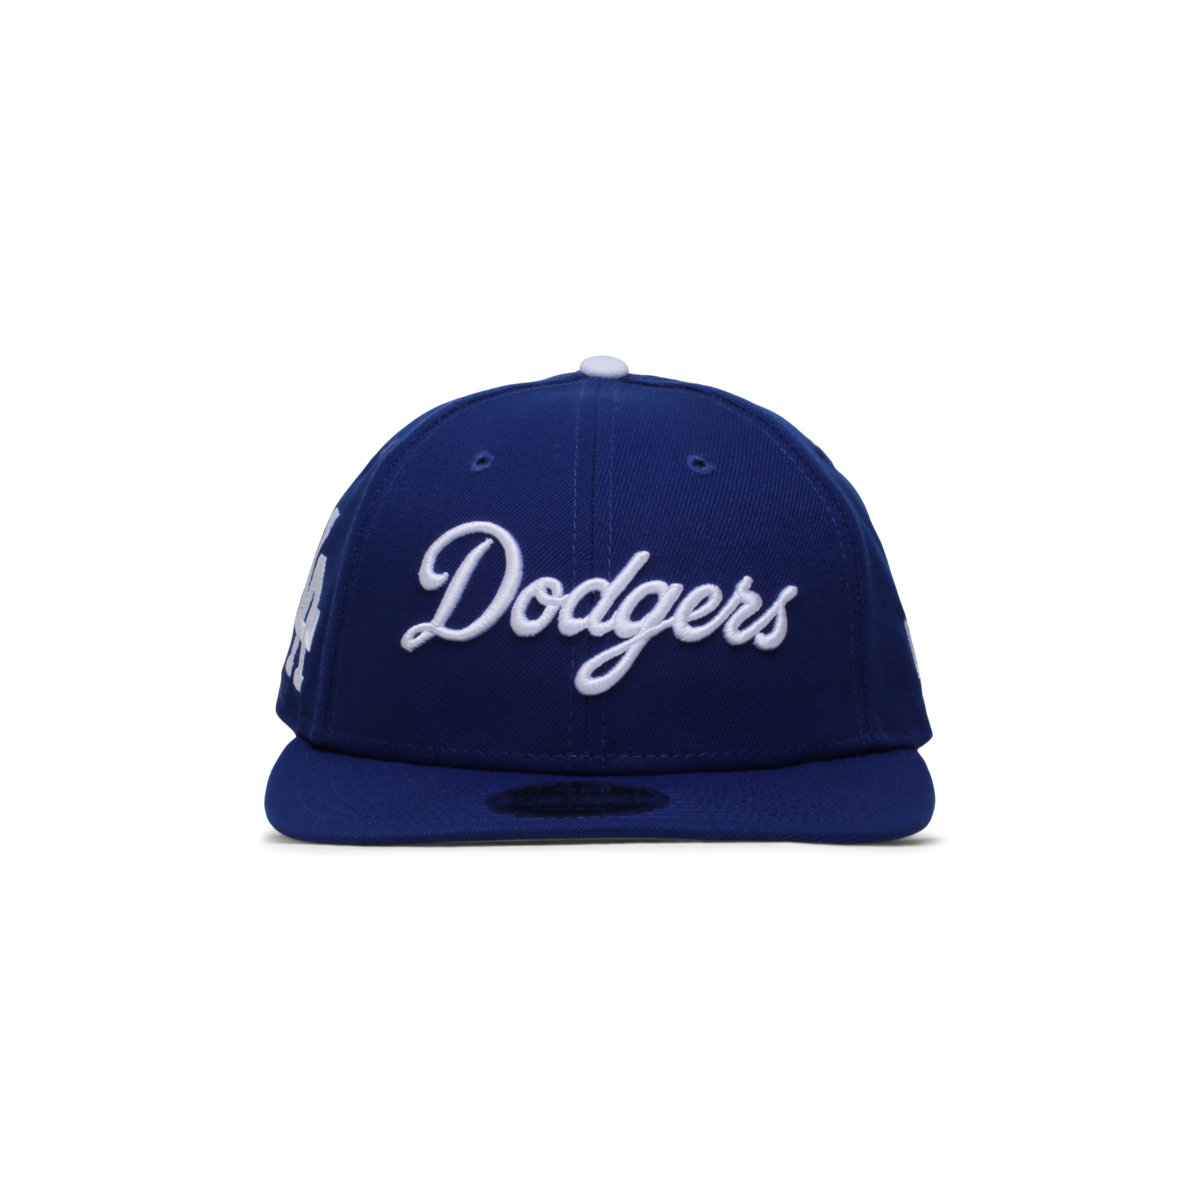 LA Dodgers x FELT 9FIFTY Snapback Cap